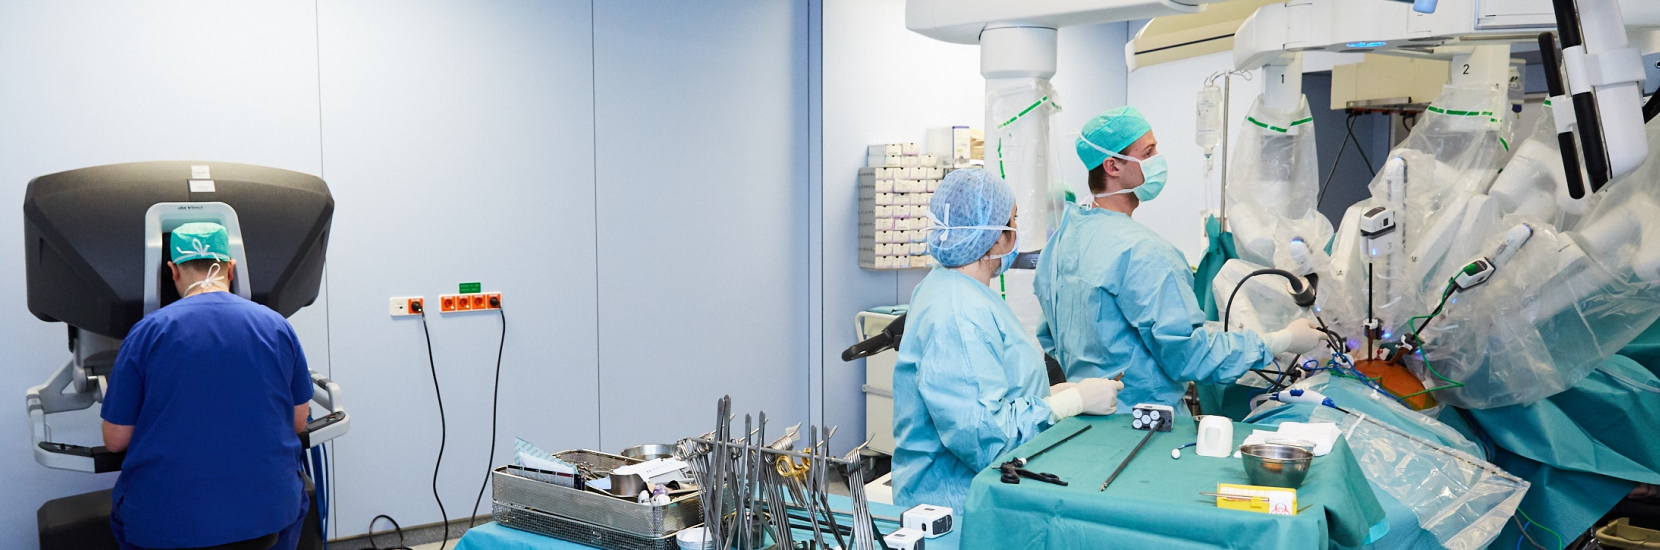 La chirurgie robotique fait son entrée au CHL